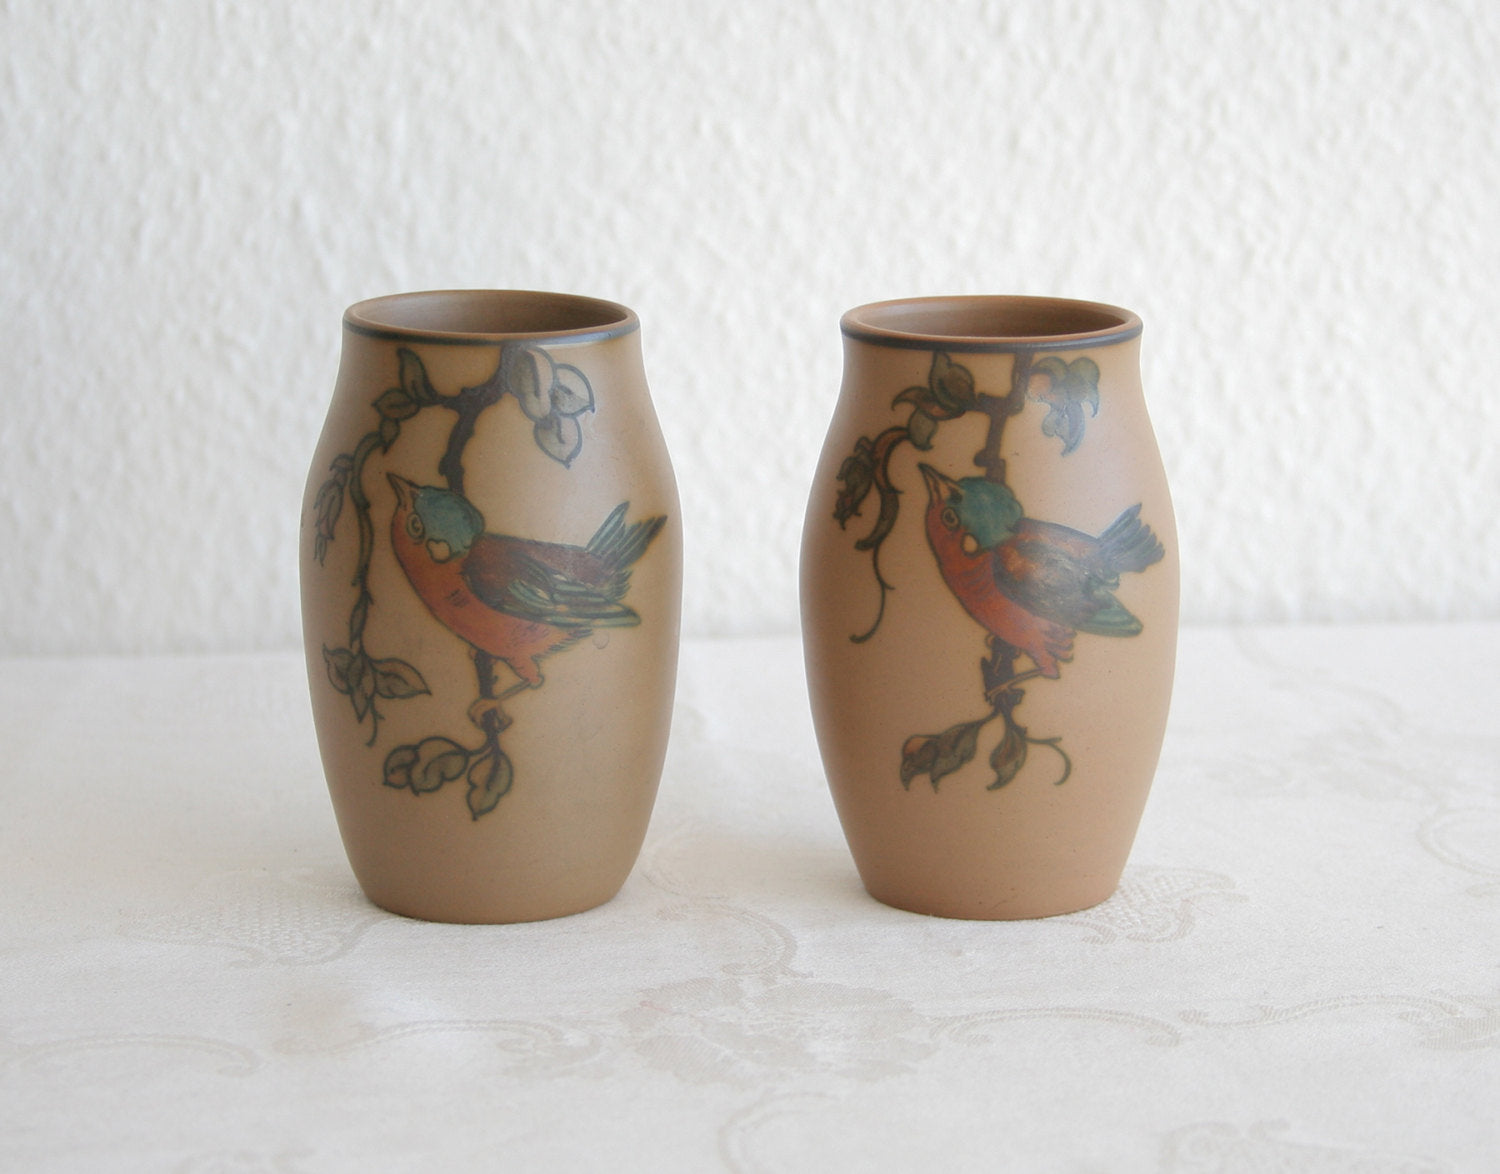 Pair of L. HJORTH Small Bird Decorated Ceramic Vases Mollaris.com 